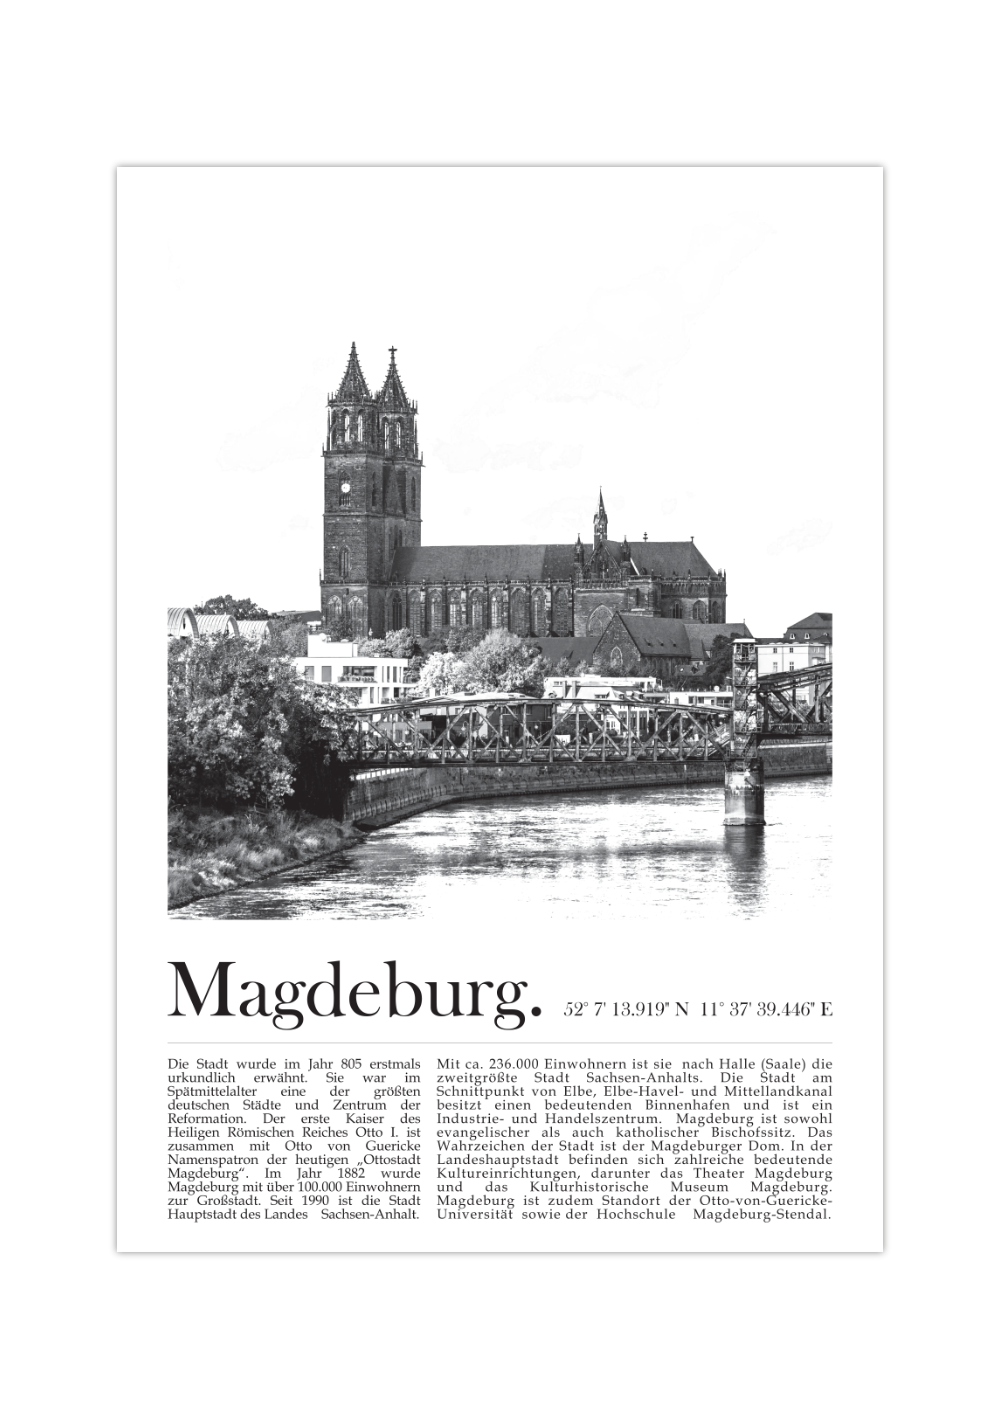 Das schwarz/weiß Poster zeigt dir eine Ansicht vom Magdeburger Dom. Mit Bildunterschrift zu städtischen Fakten und der Geschichte der Stadt sowie den Magdeburger Koordinaten.